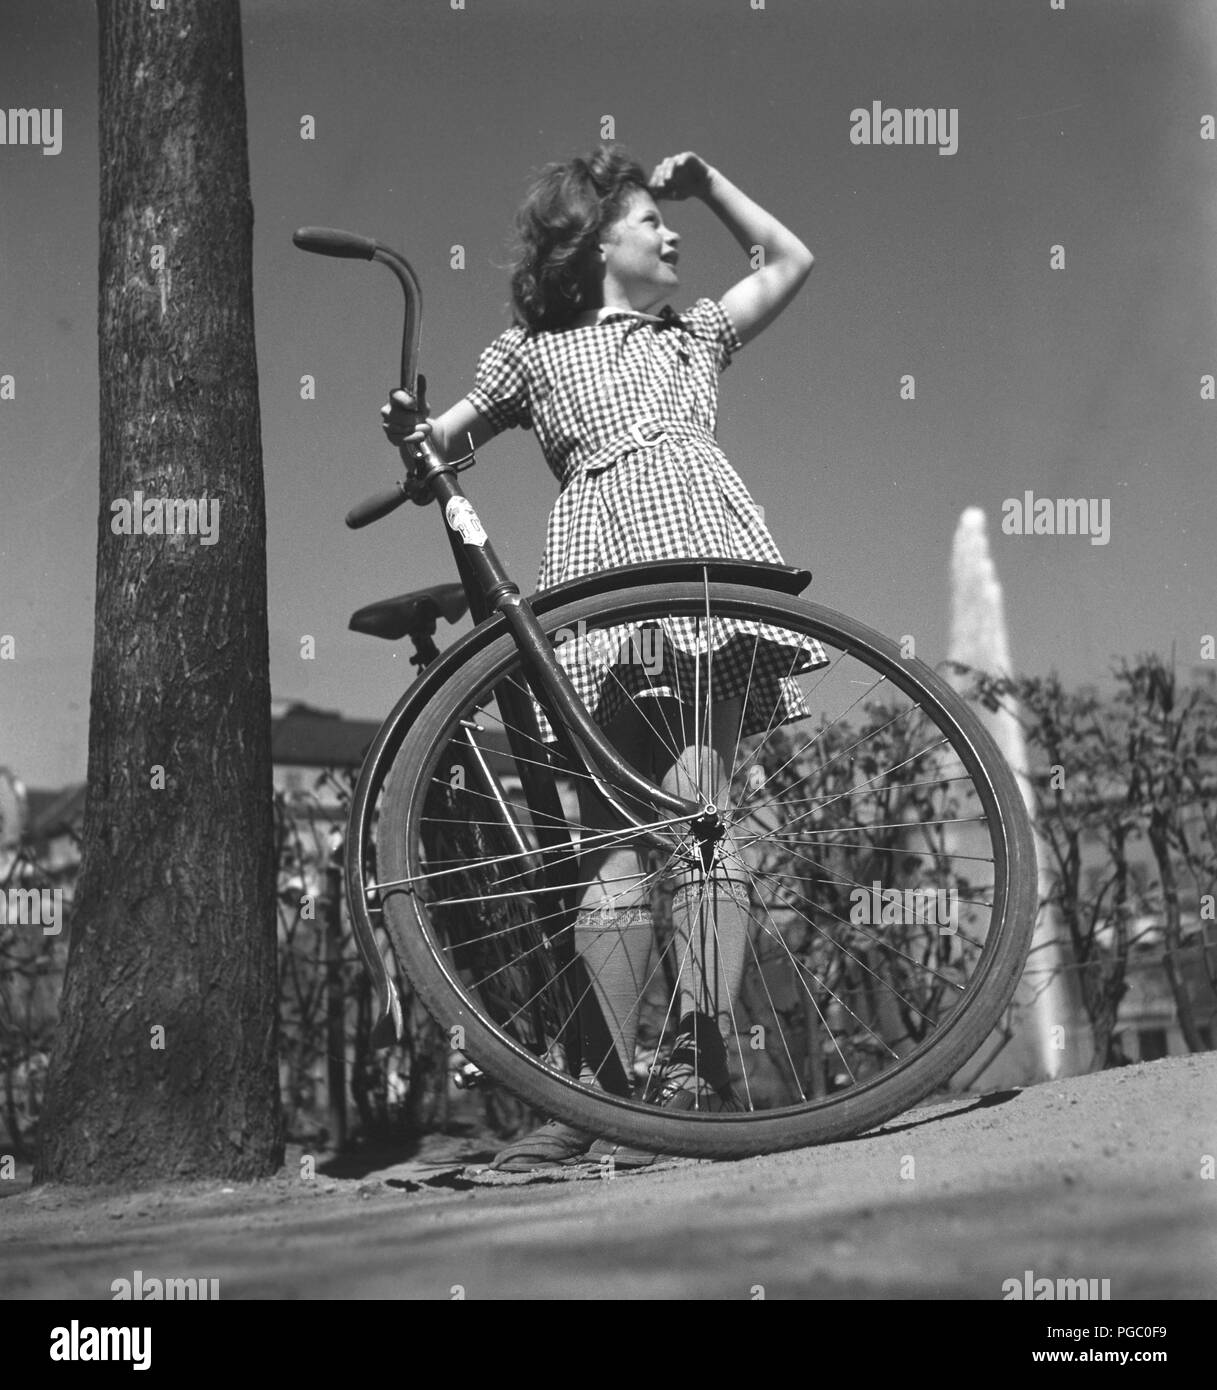 1940 fille avec location. Une jeune fille, habillée d'une robe à carreaux, est debout près de son vélo d'une journée ensoleillée. La Suède Mai 1940. 133-2 Kristoffersson Photo Banque D'Images